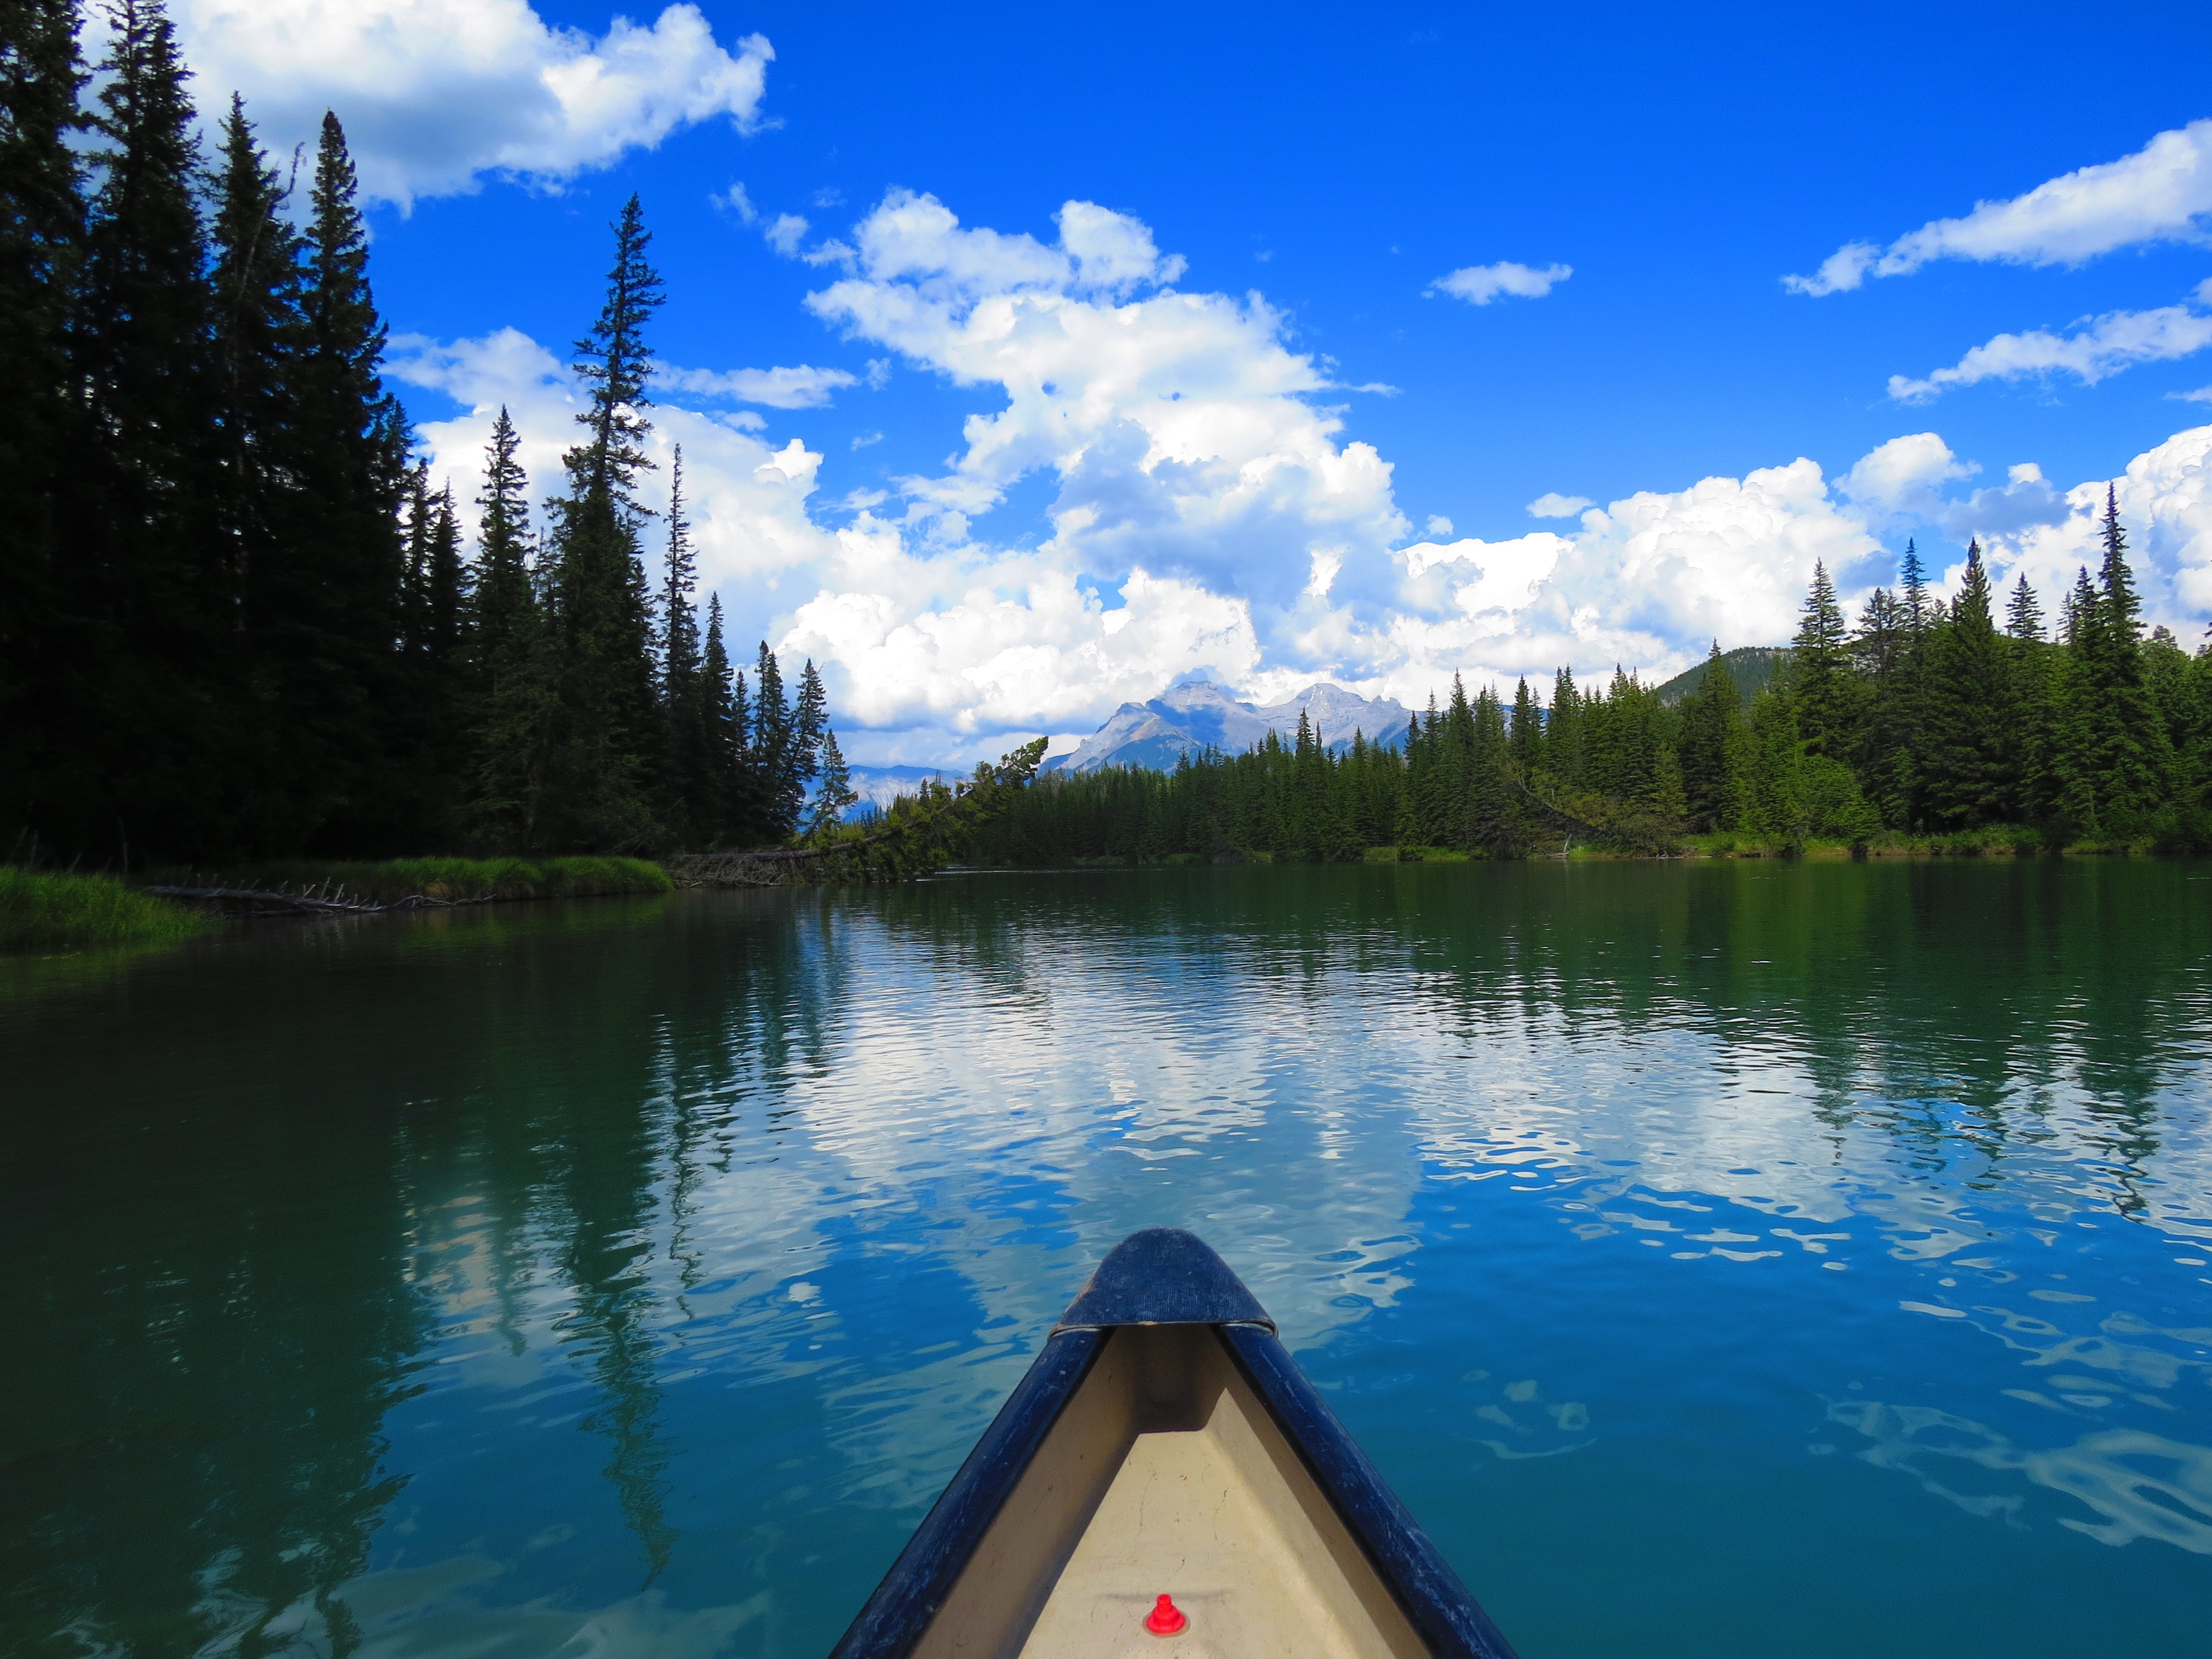 Free Images : boat, lake, canoe, reflection, vehicle, reservoir ...